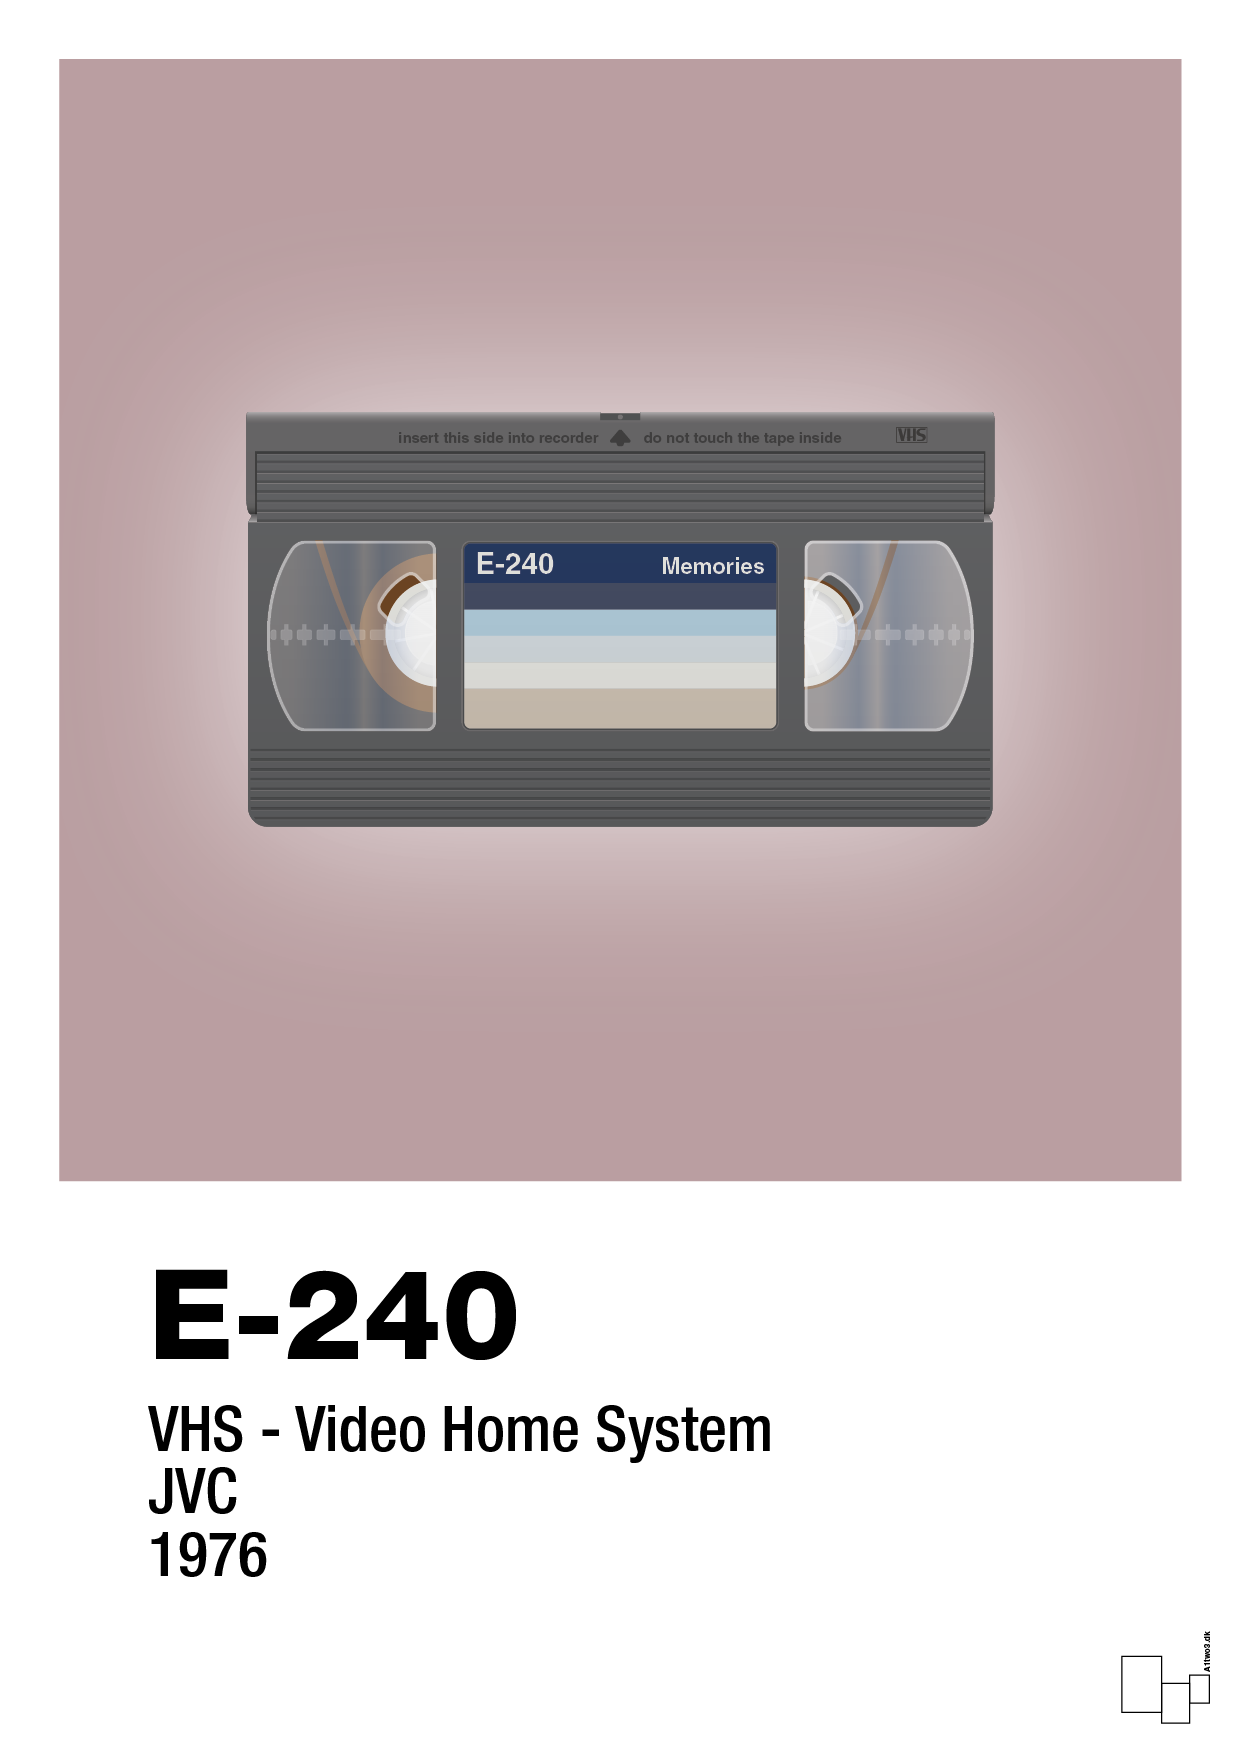 videobånd e-240 - Plakat med Grafik i Light Rose